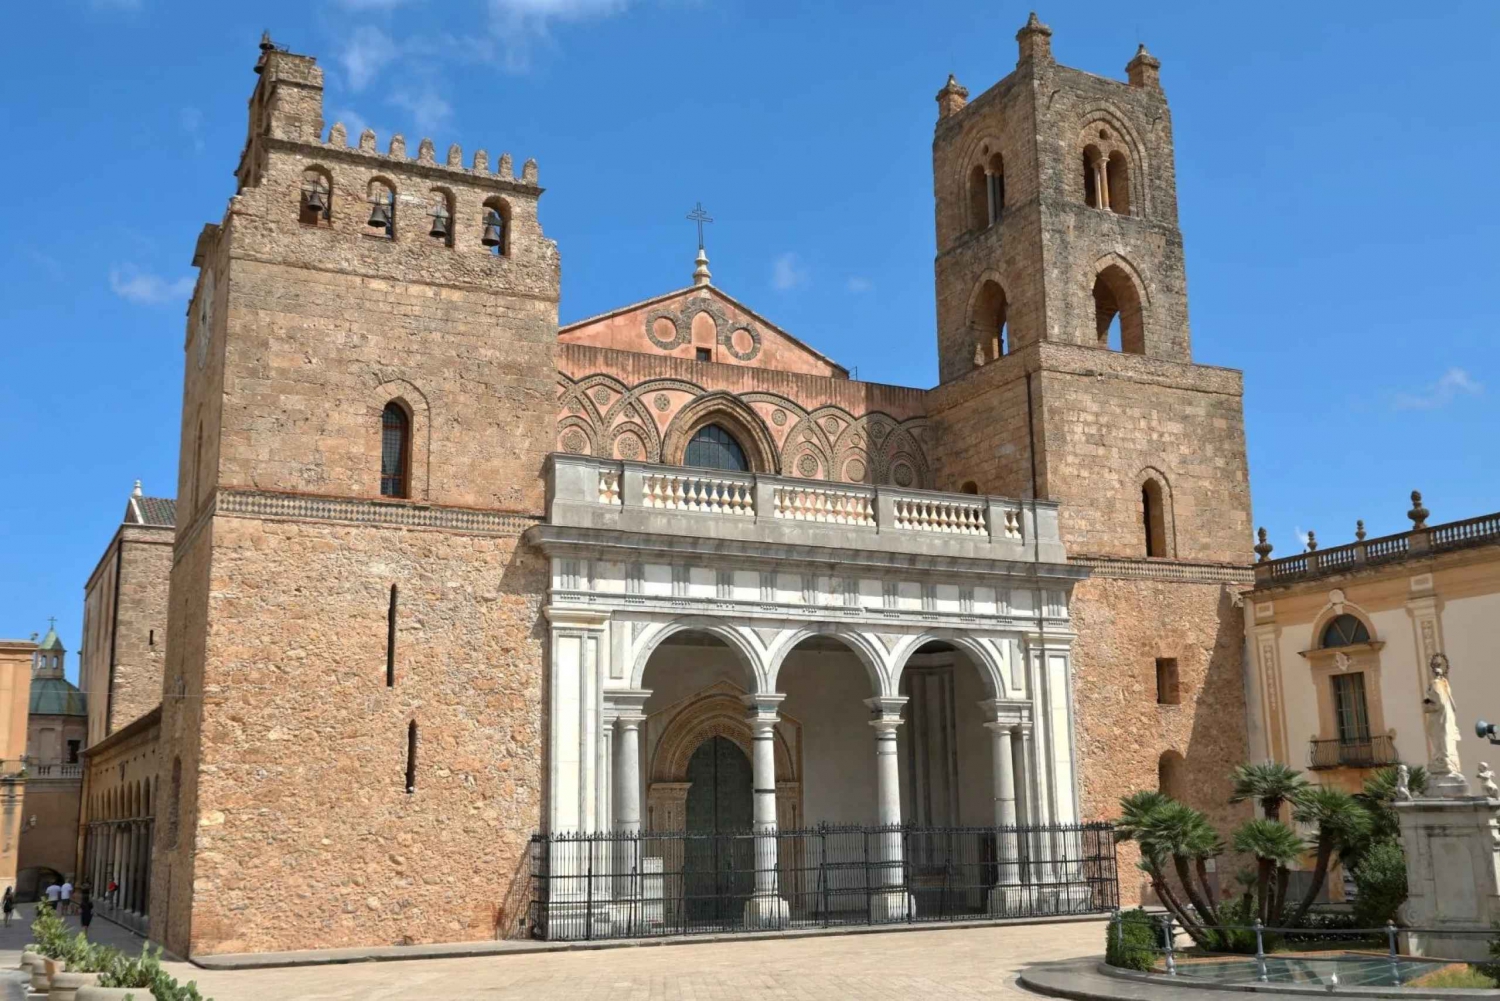 Palermo: Monreale, Catacombe e S. Giovanni degli Eremiti